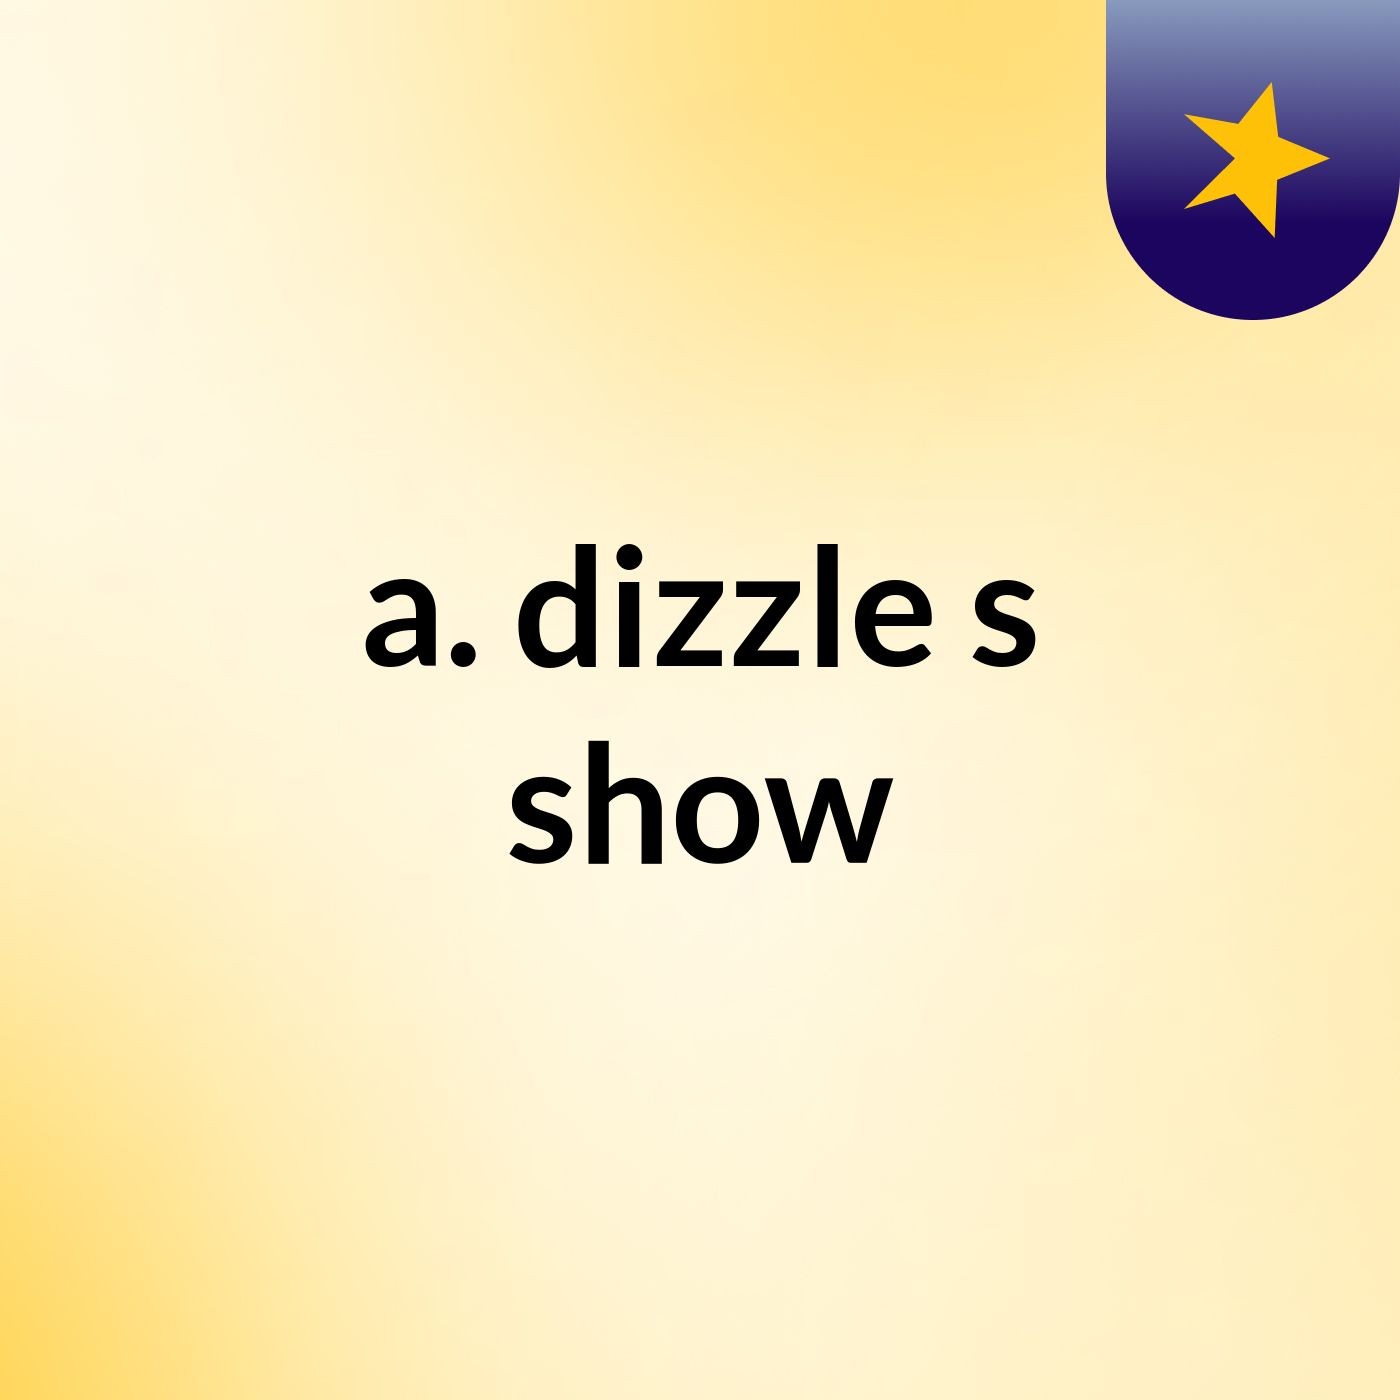 a. dizzle's show